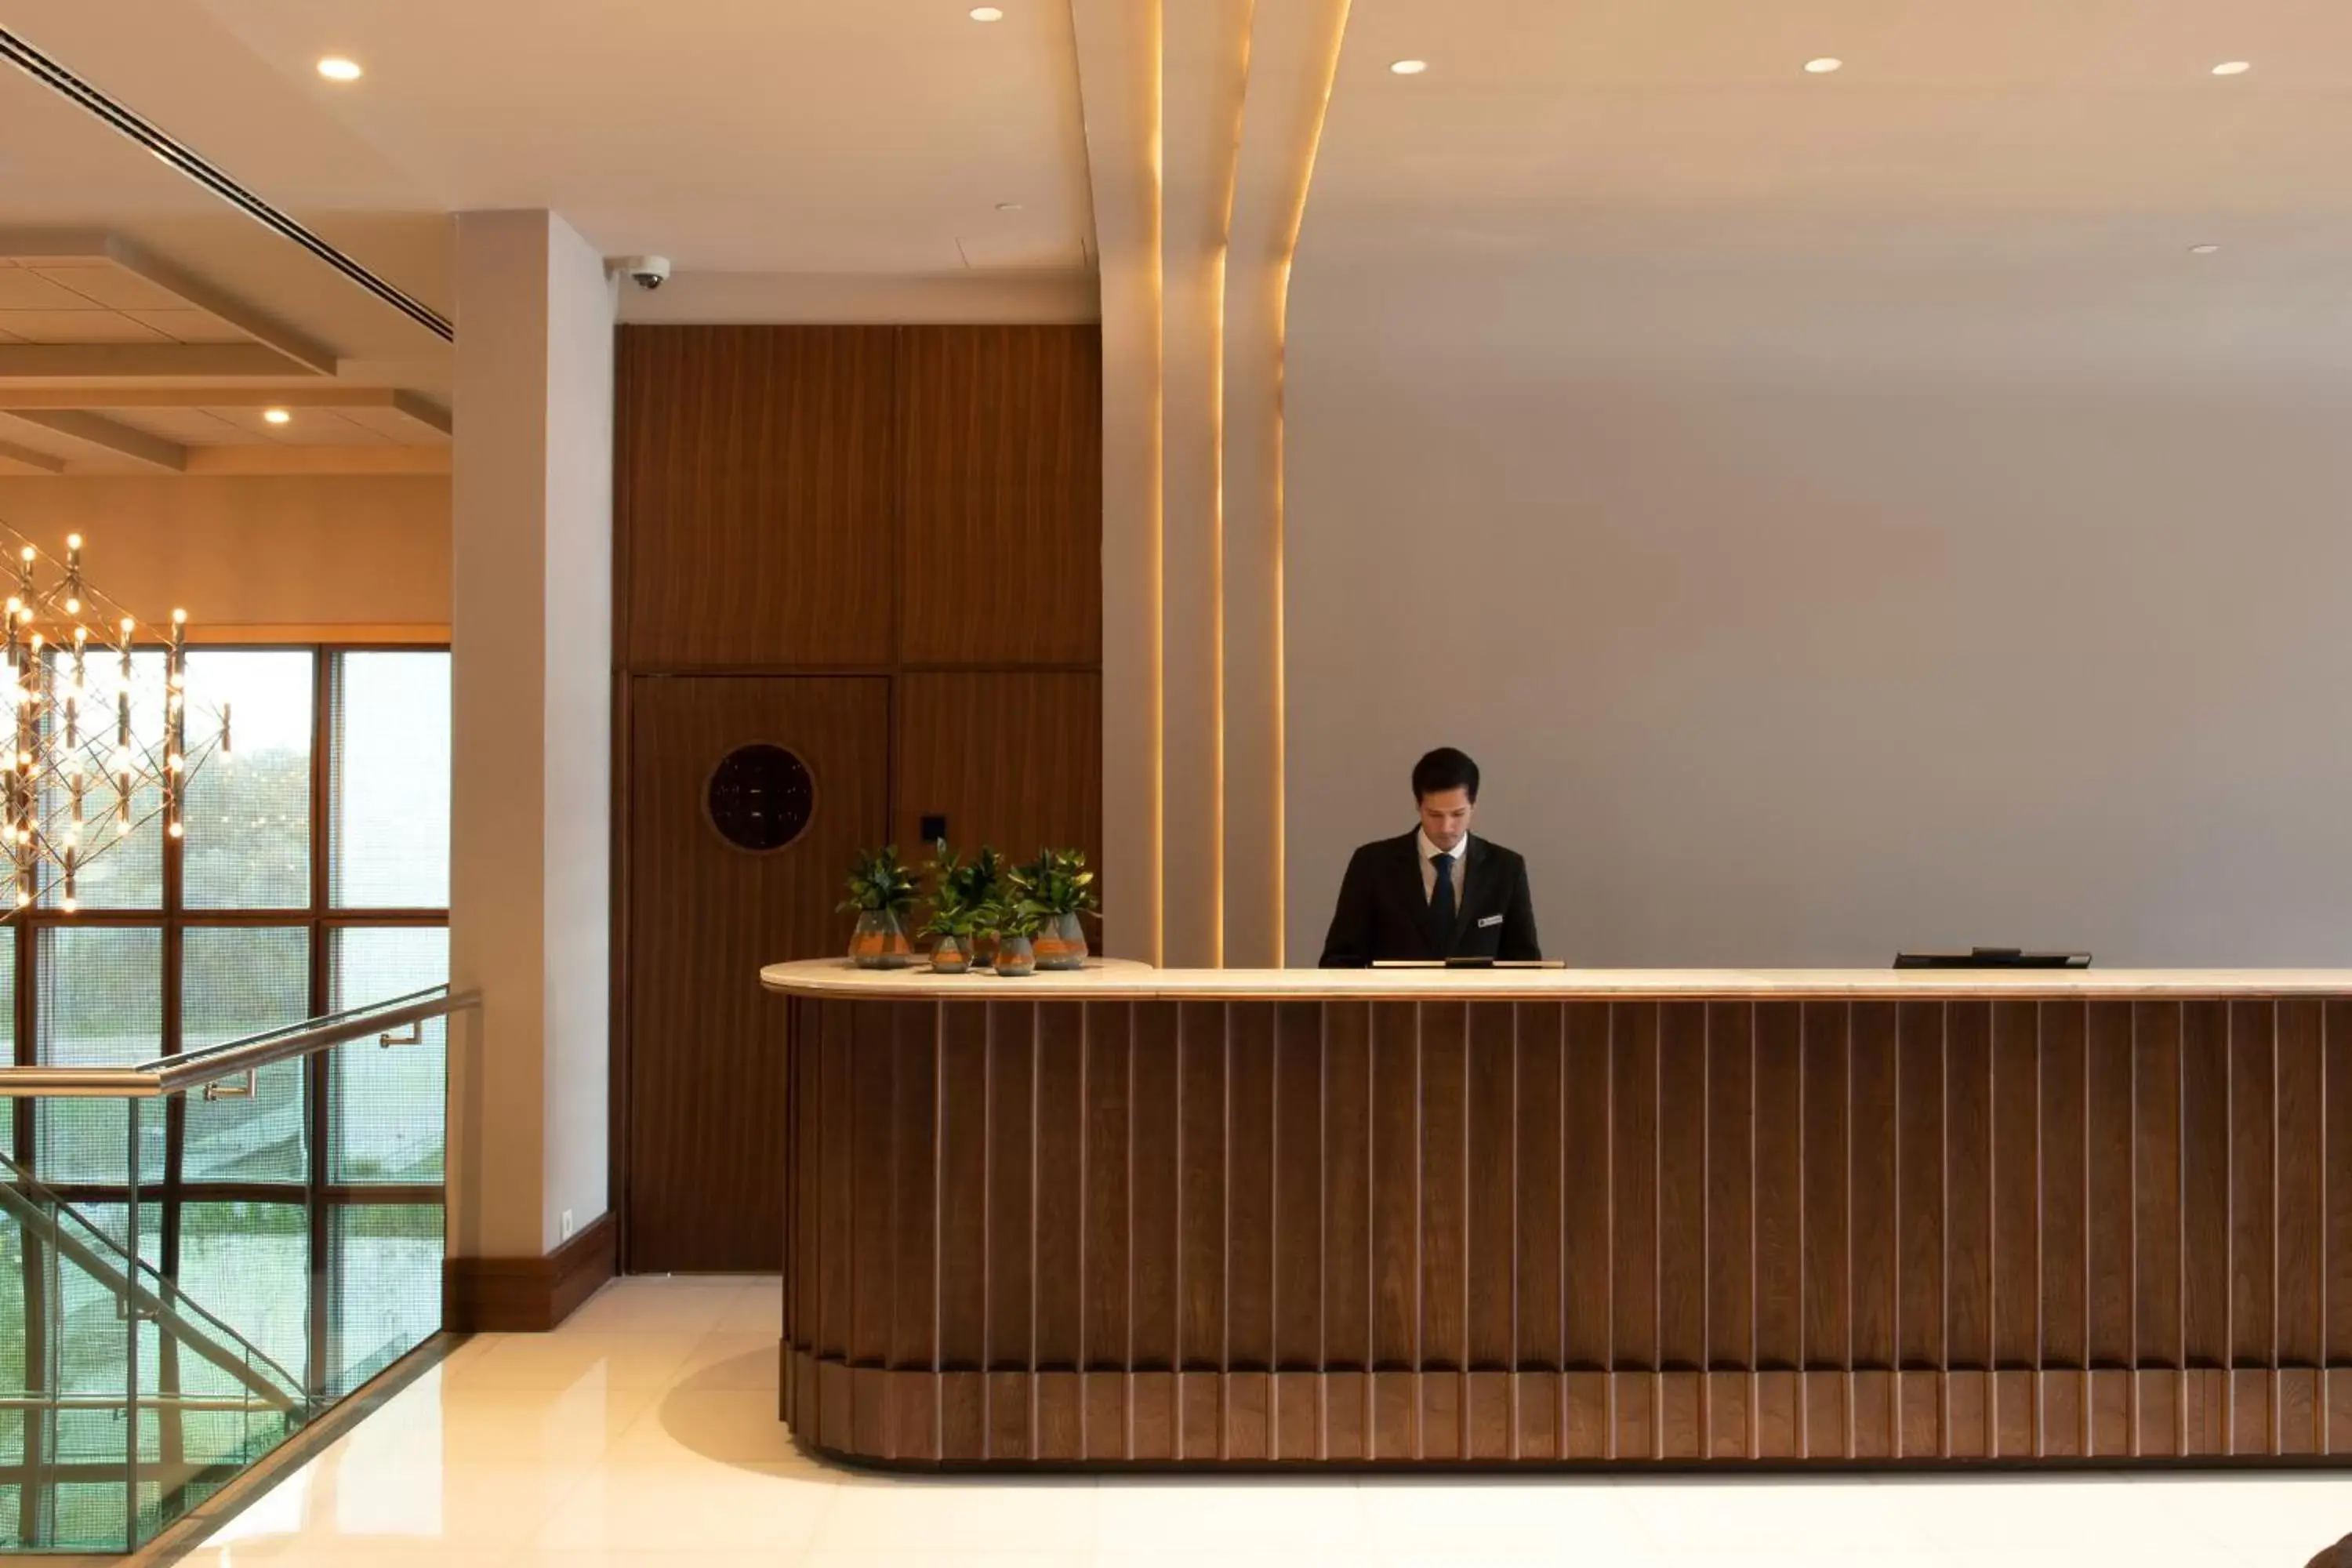 Lobby or reception, Lobby/Reception in SANA Malhoa Hotel